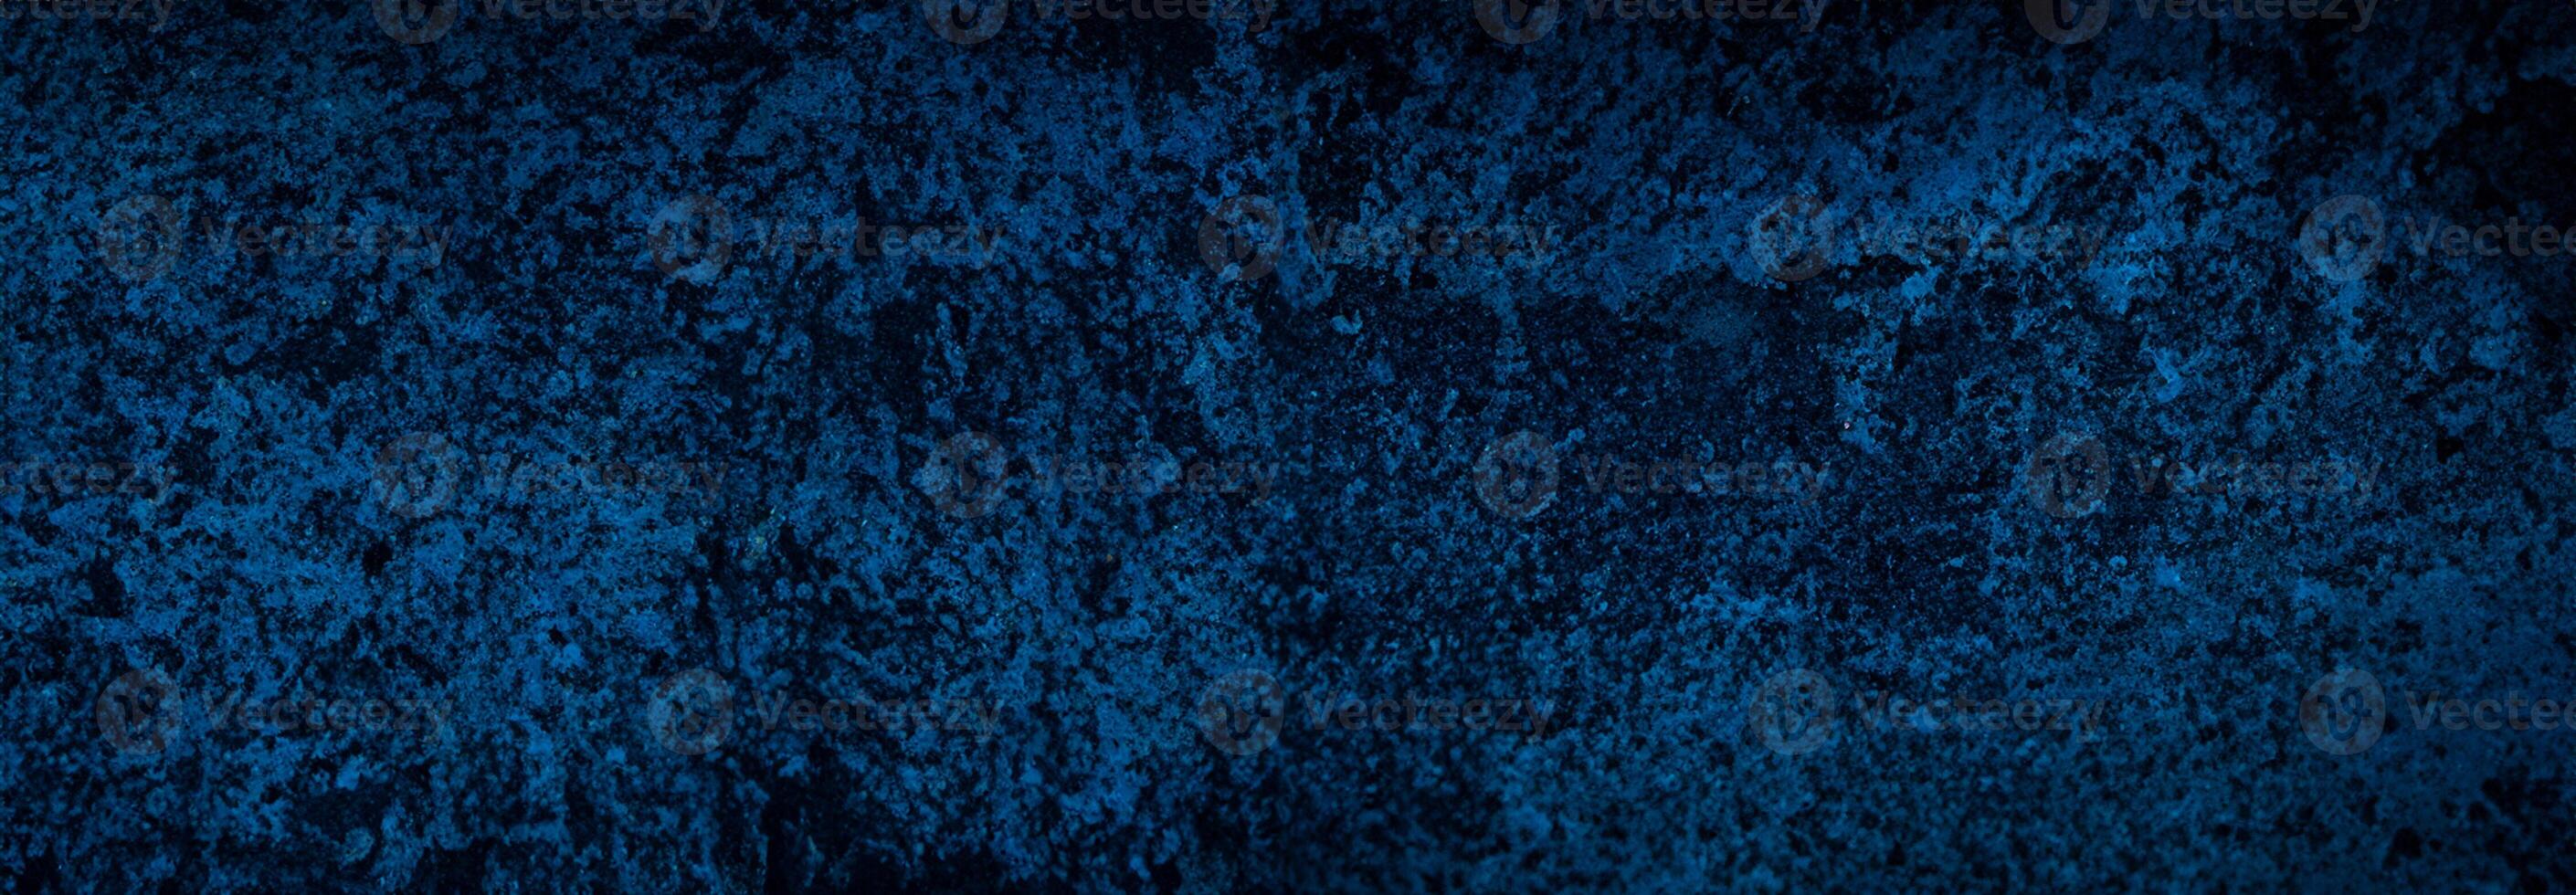 dark blue texture background photo